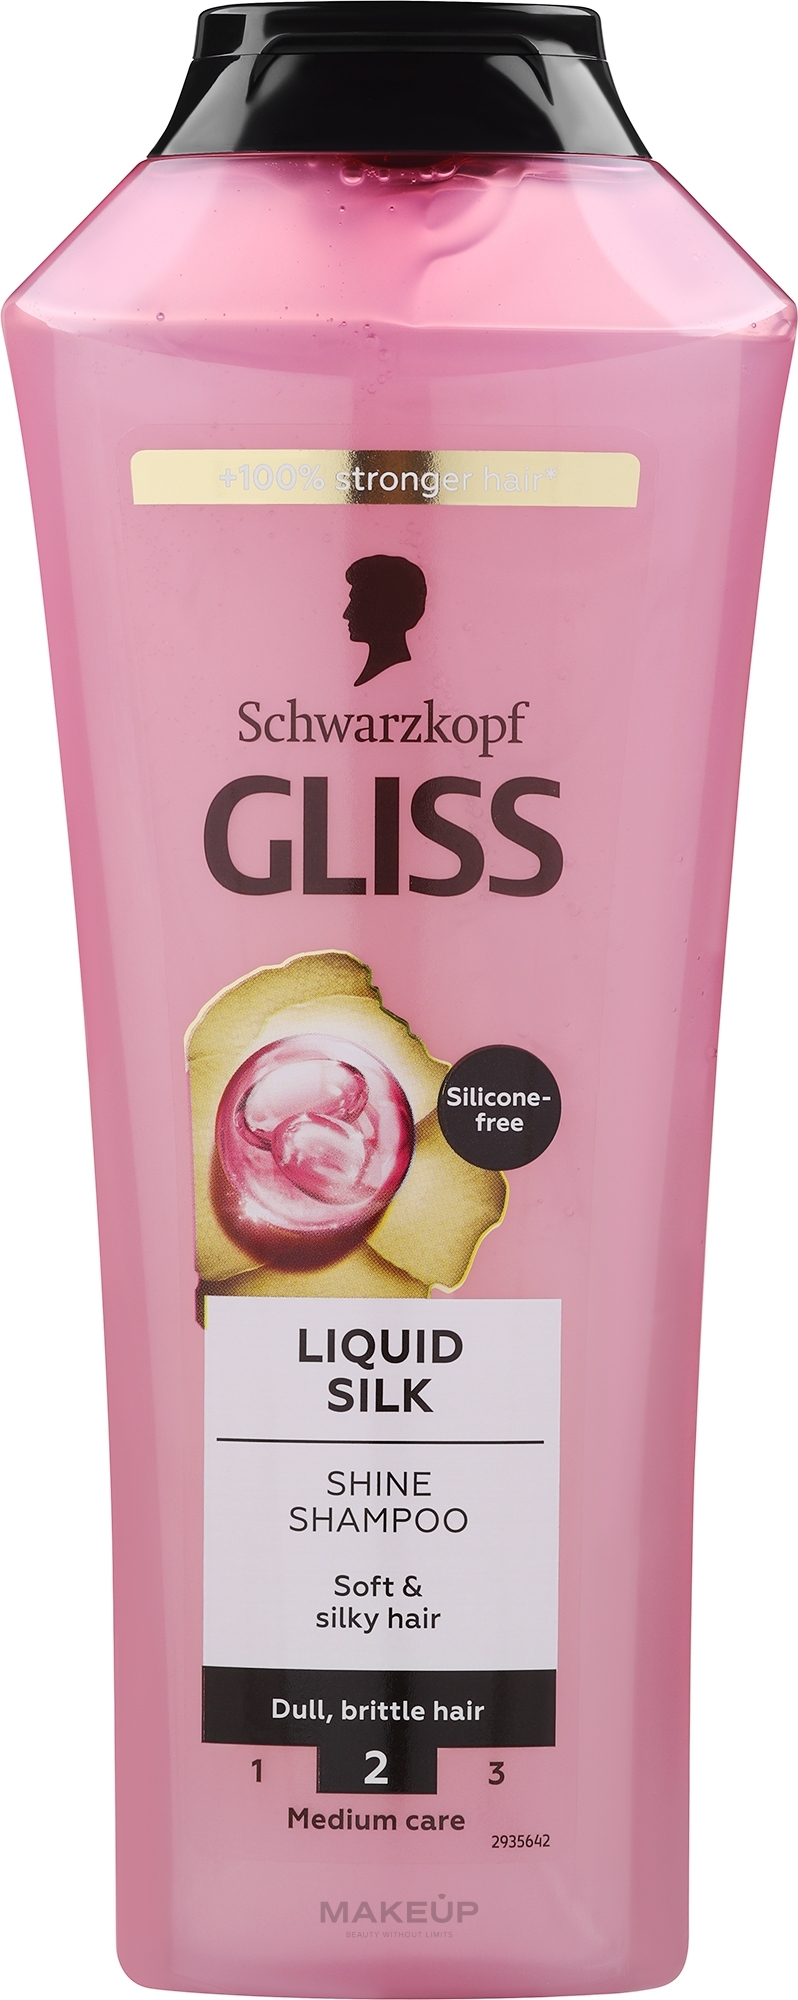 Gliss Kur Liquid Silk Shampoo - Nährendes Shampoo für trockenes und geschädigtes Haar — Foto 400 ml